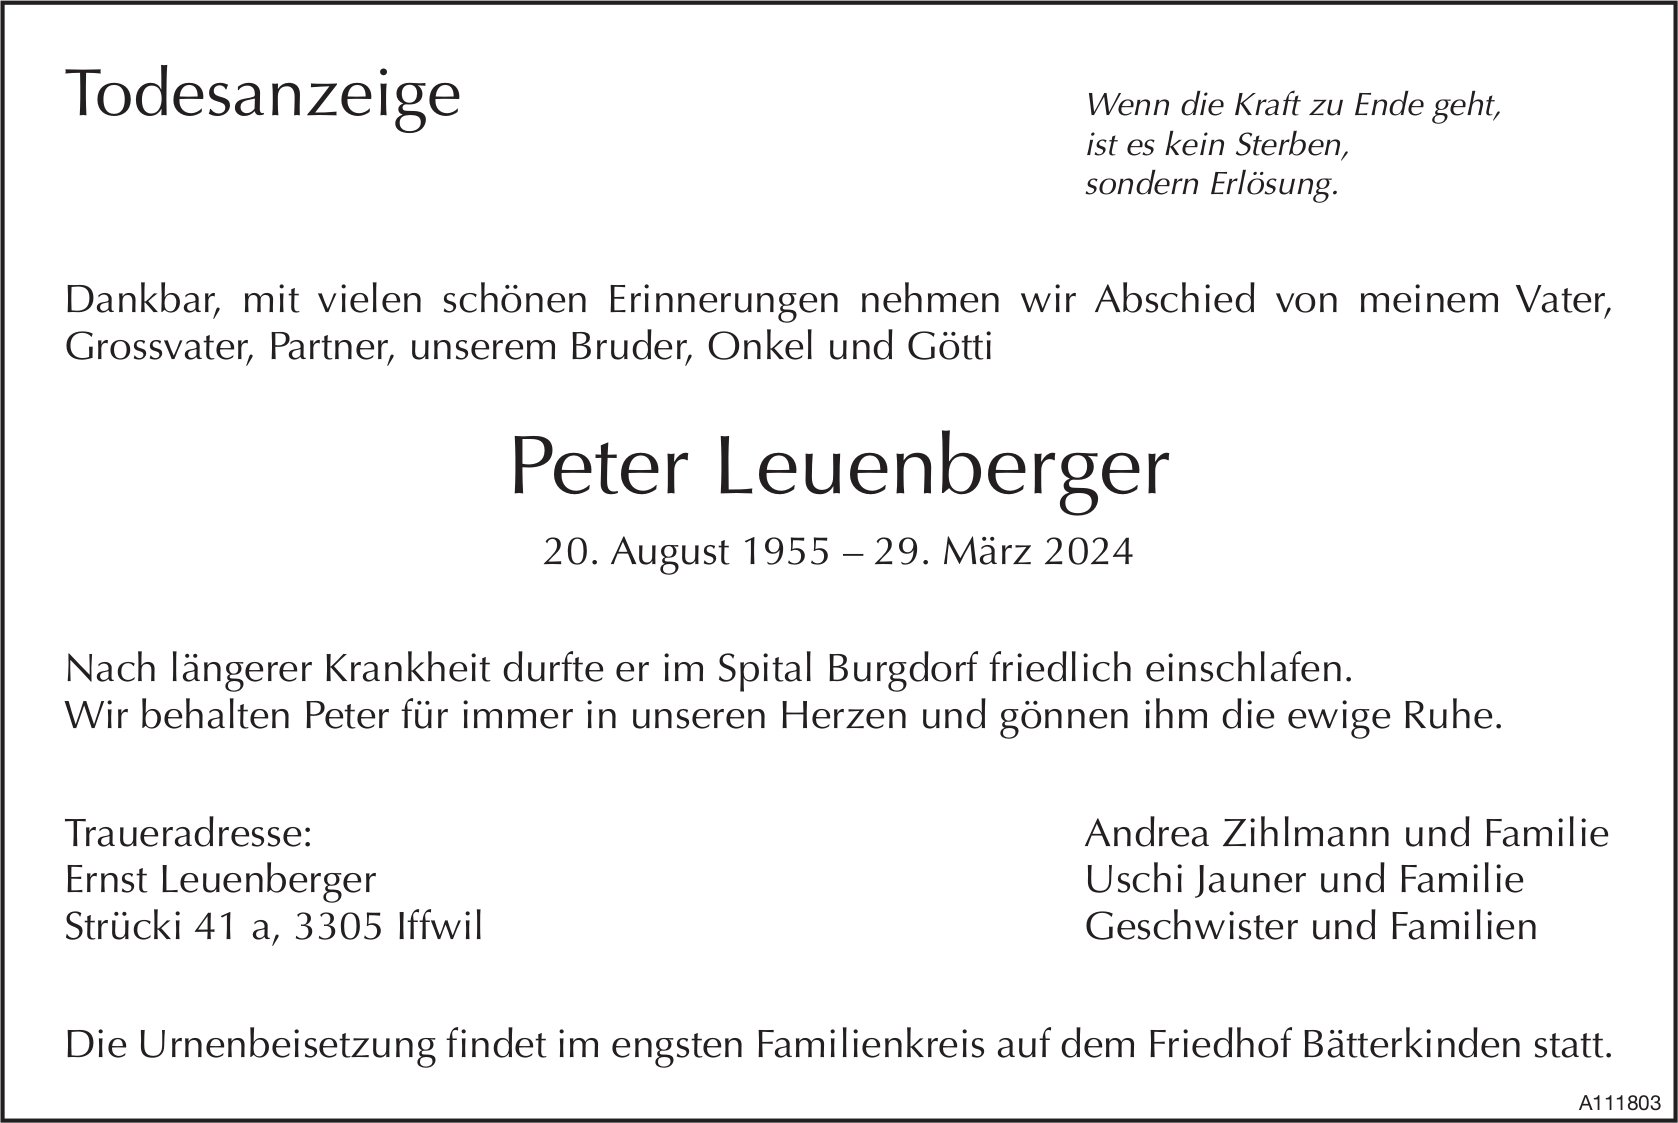 Peter Leuenberger, März 2024 / TA